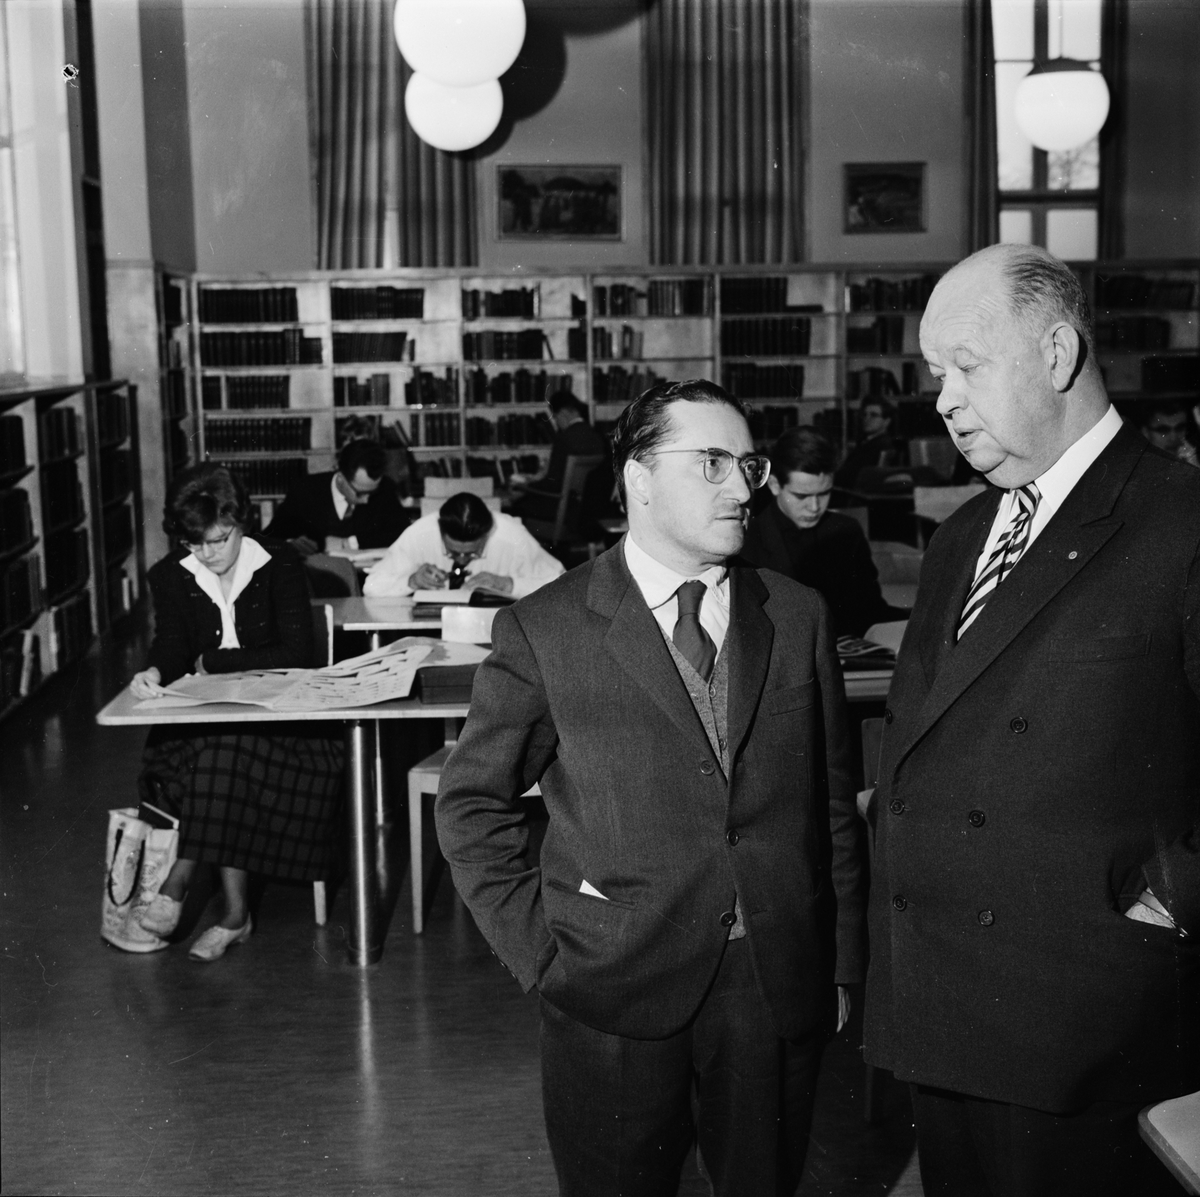 Stadsbibliotekarie Paul Harnesk och man i samtal på Stadsbiblioteket, Uppsala